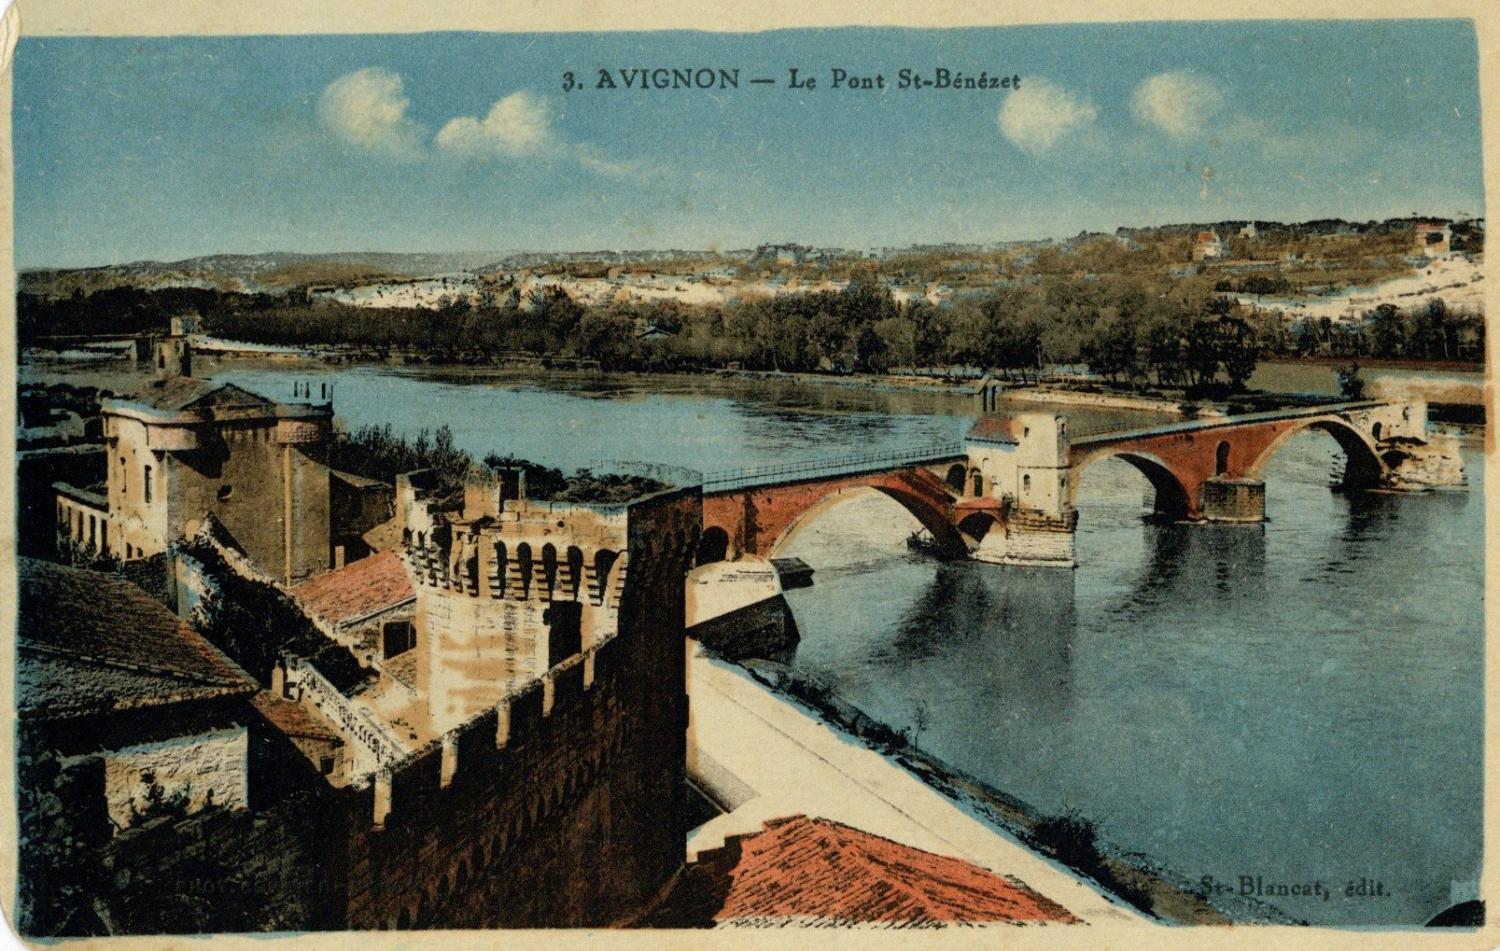 Avignon - Le Pont St-Bénézet.